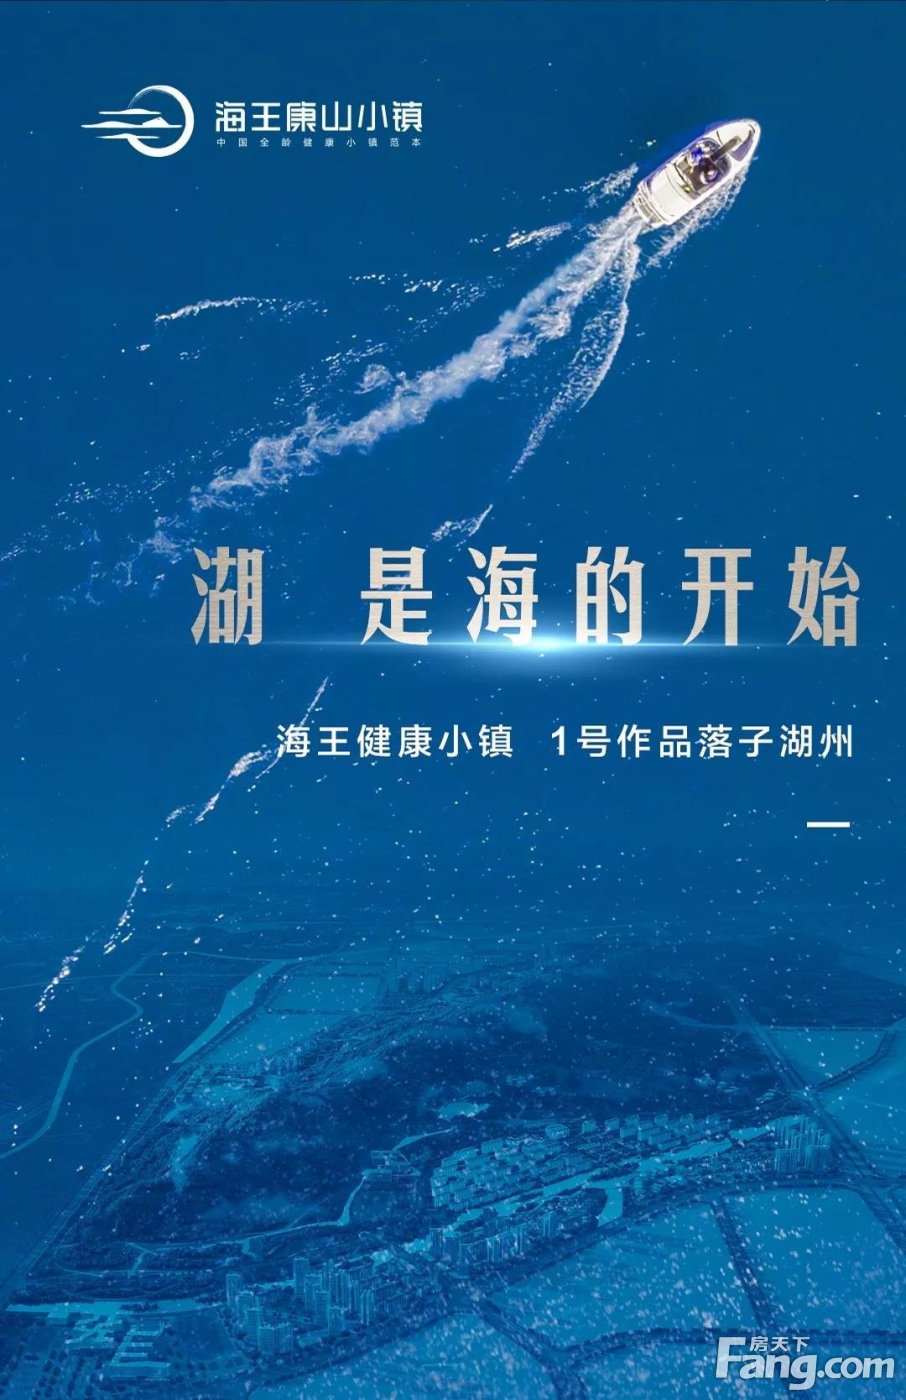 2019海王媒体行| 从南中国到南太湖，海王落地健康小镇